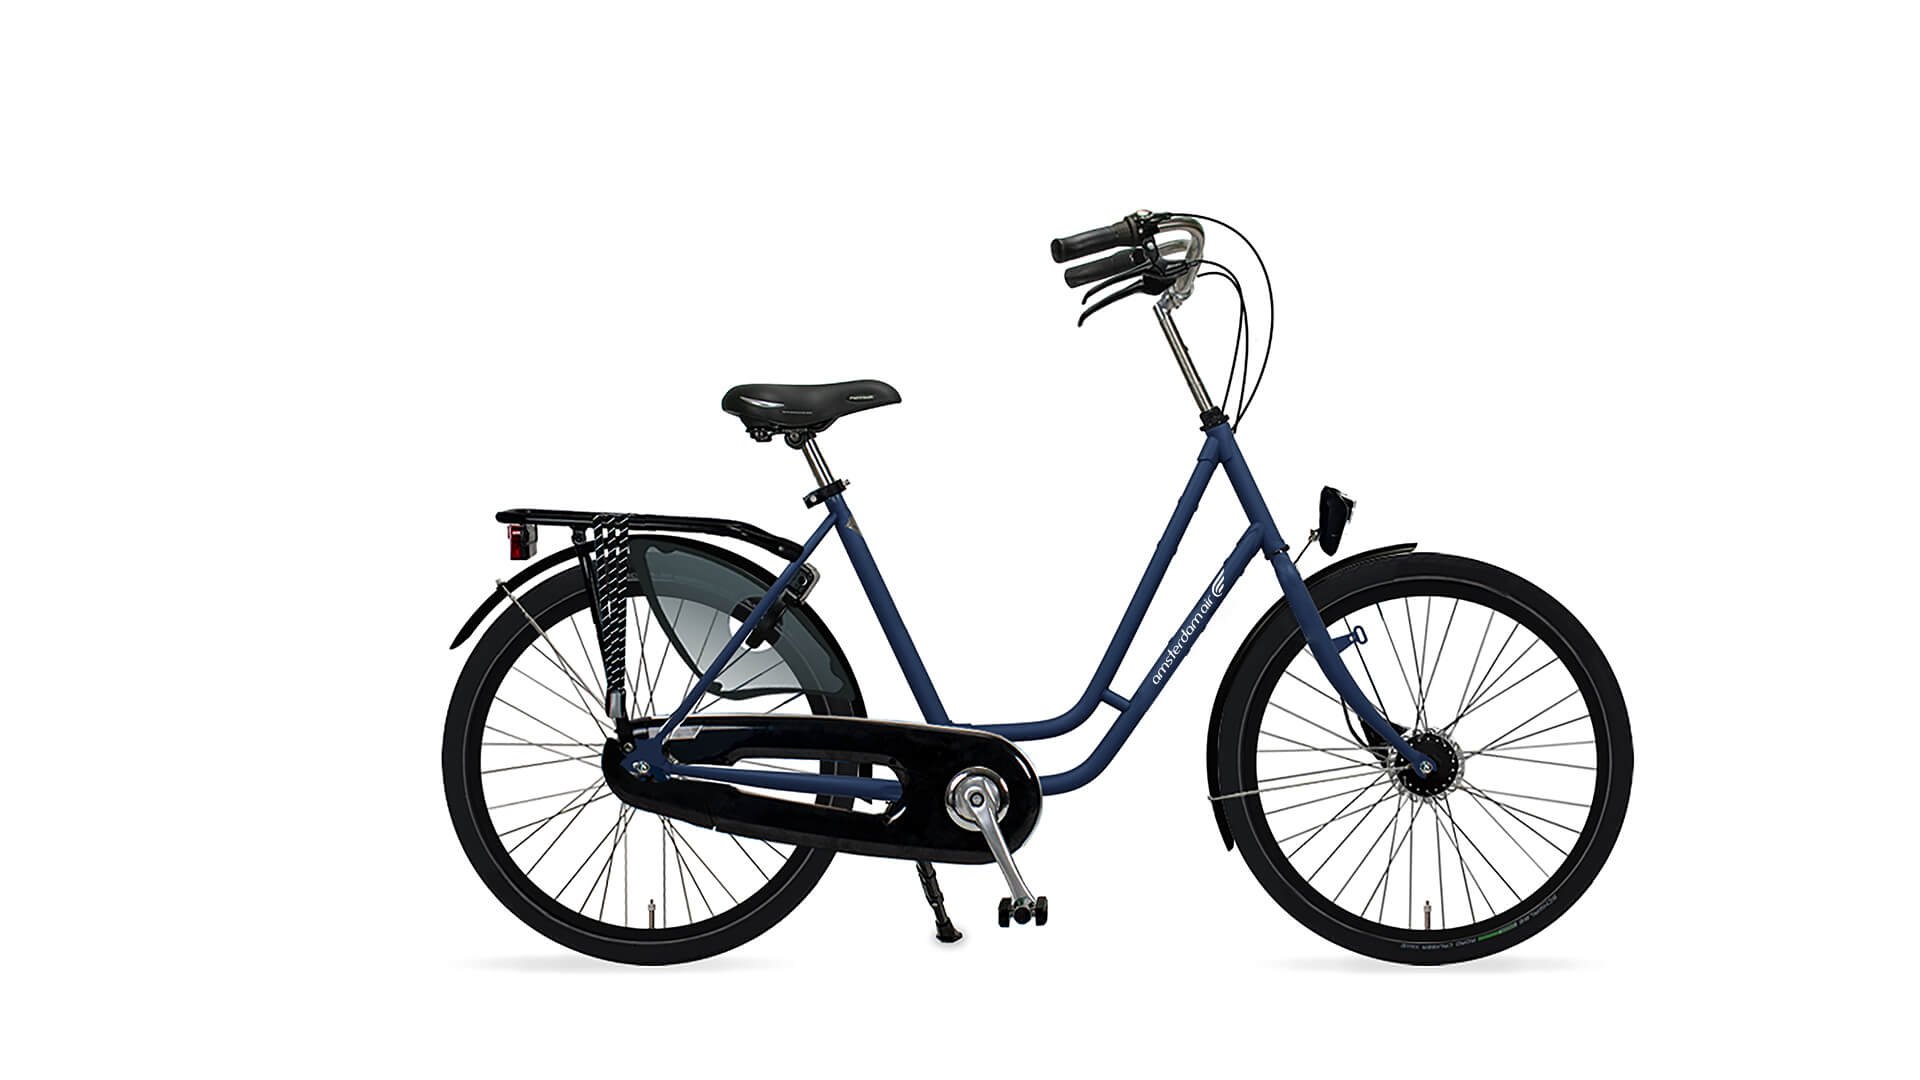 Vélo hollandais Klein 24 pouces avec cadre bleu mat